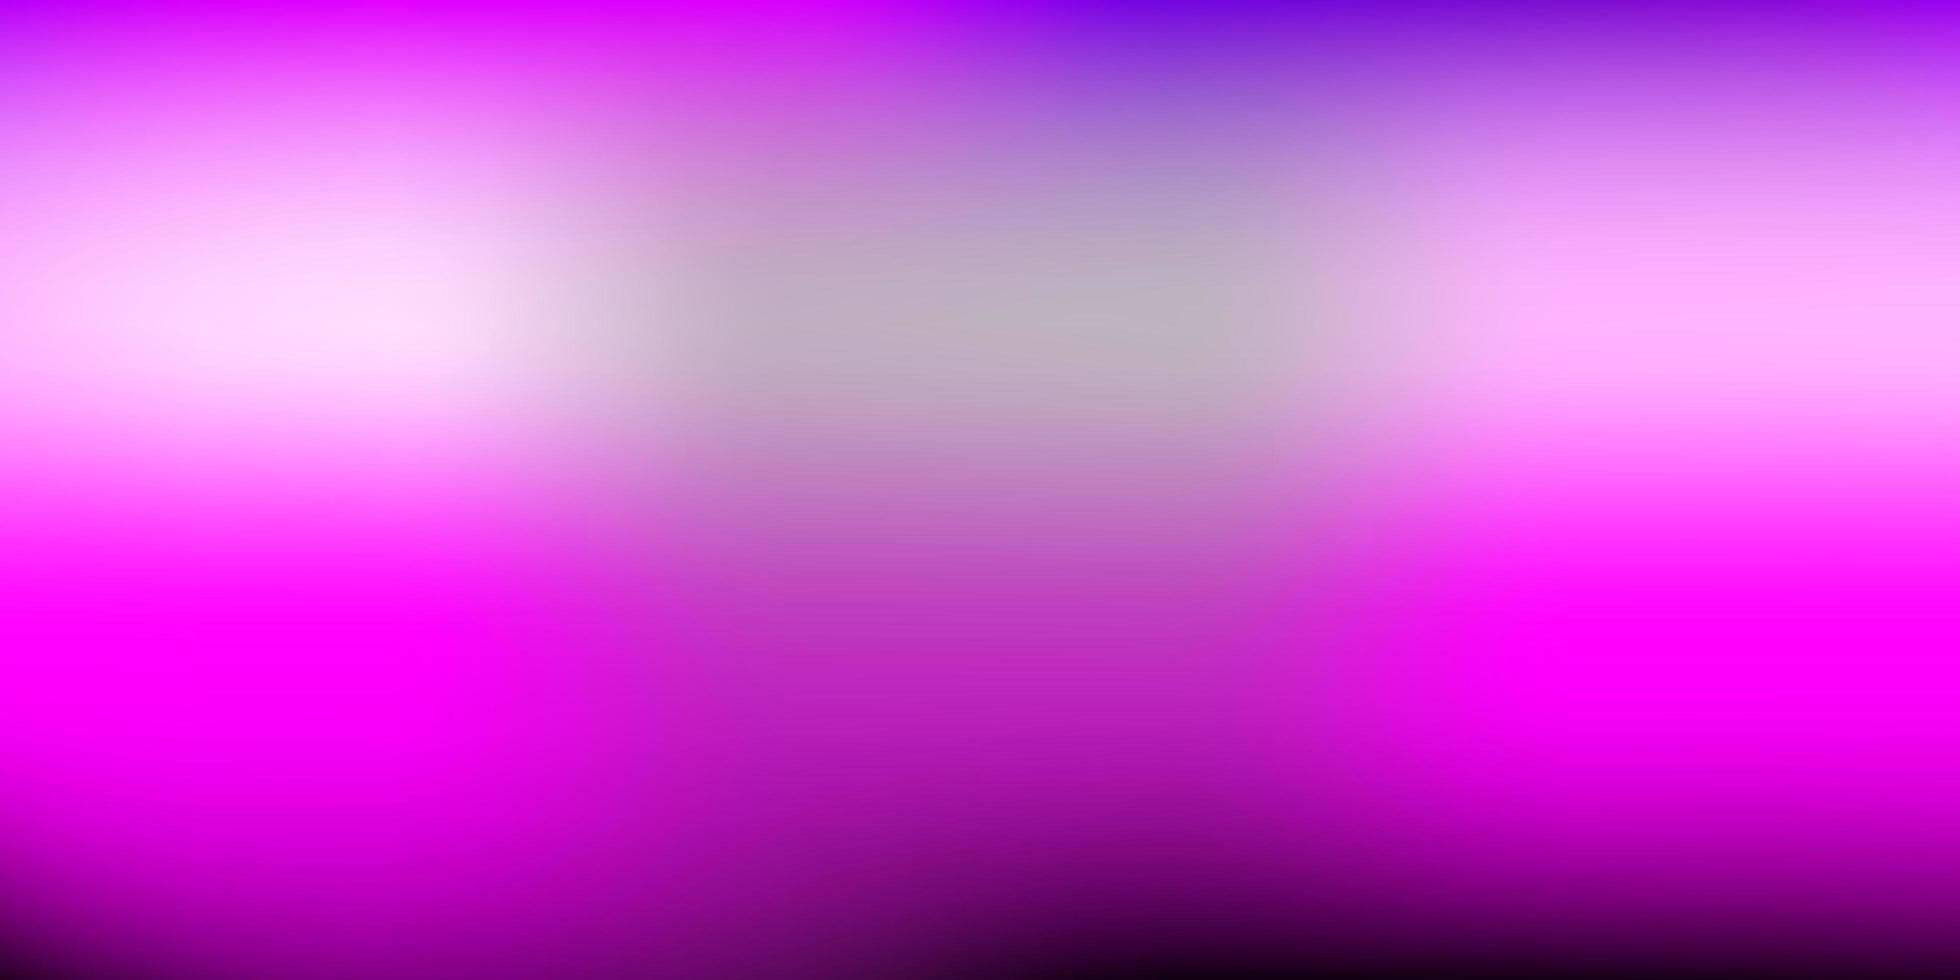 patrón borroso vector púrpura claro, rosa.